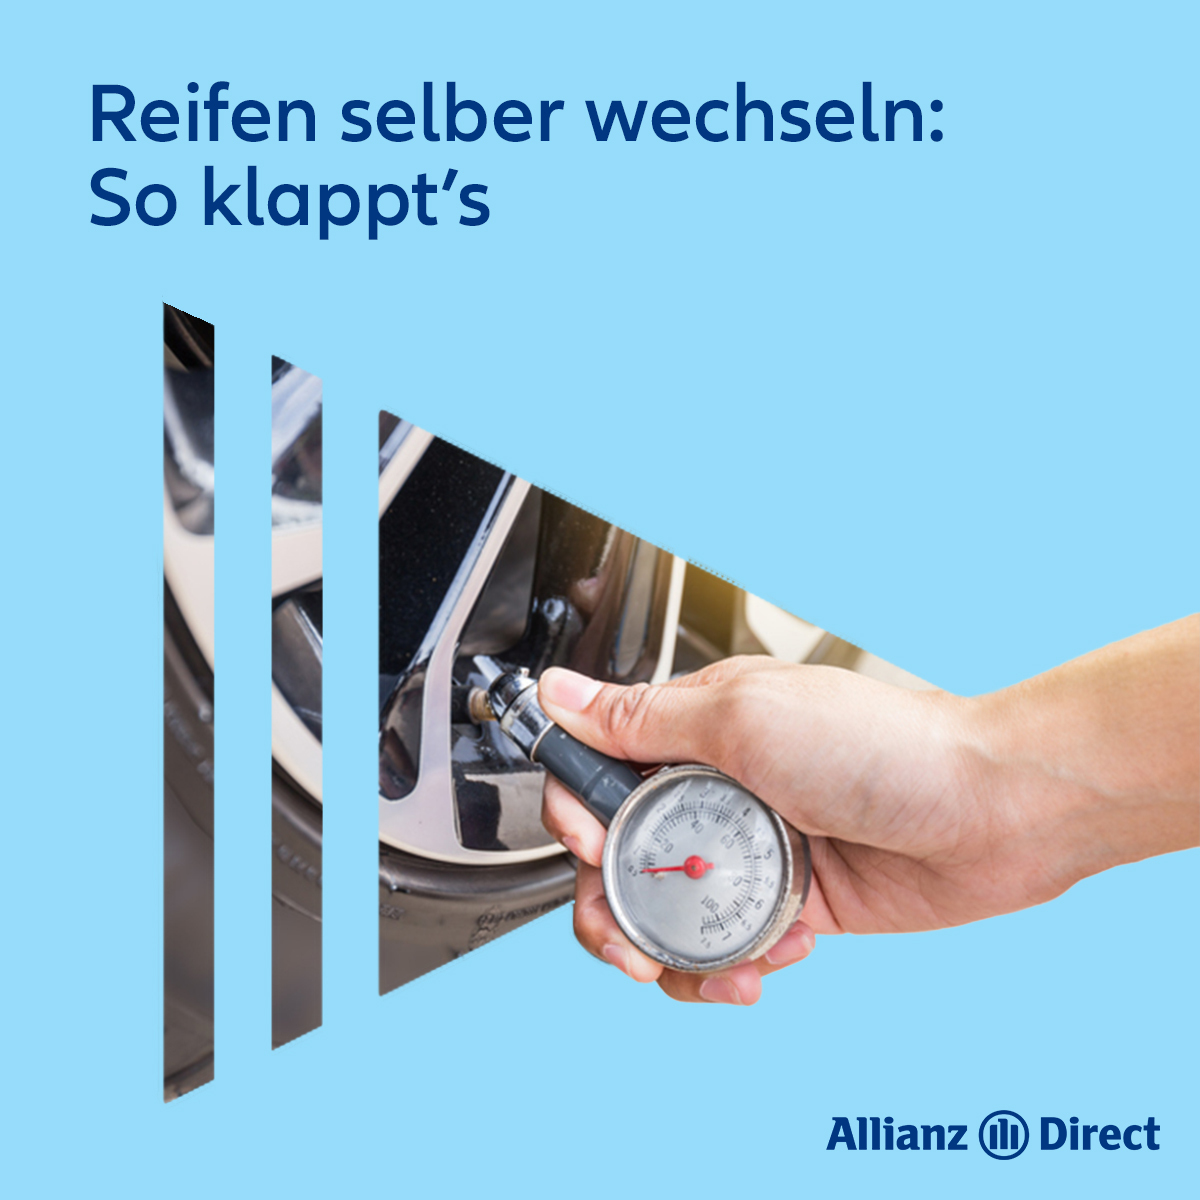 Reifenwechsel: Was muss man beim Reifenwechseln beachten?, Bayern 1, Radio